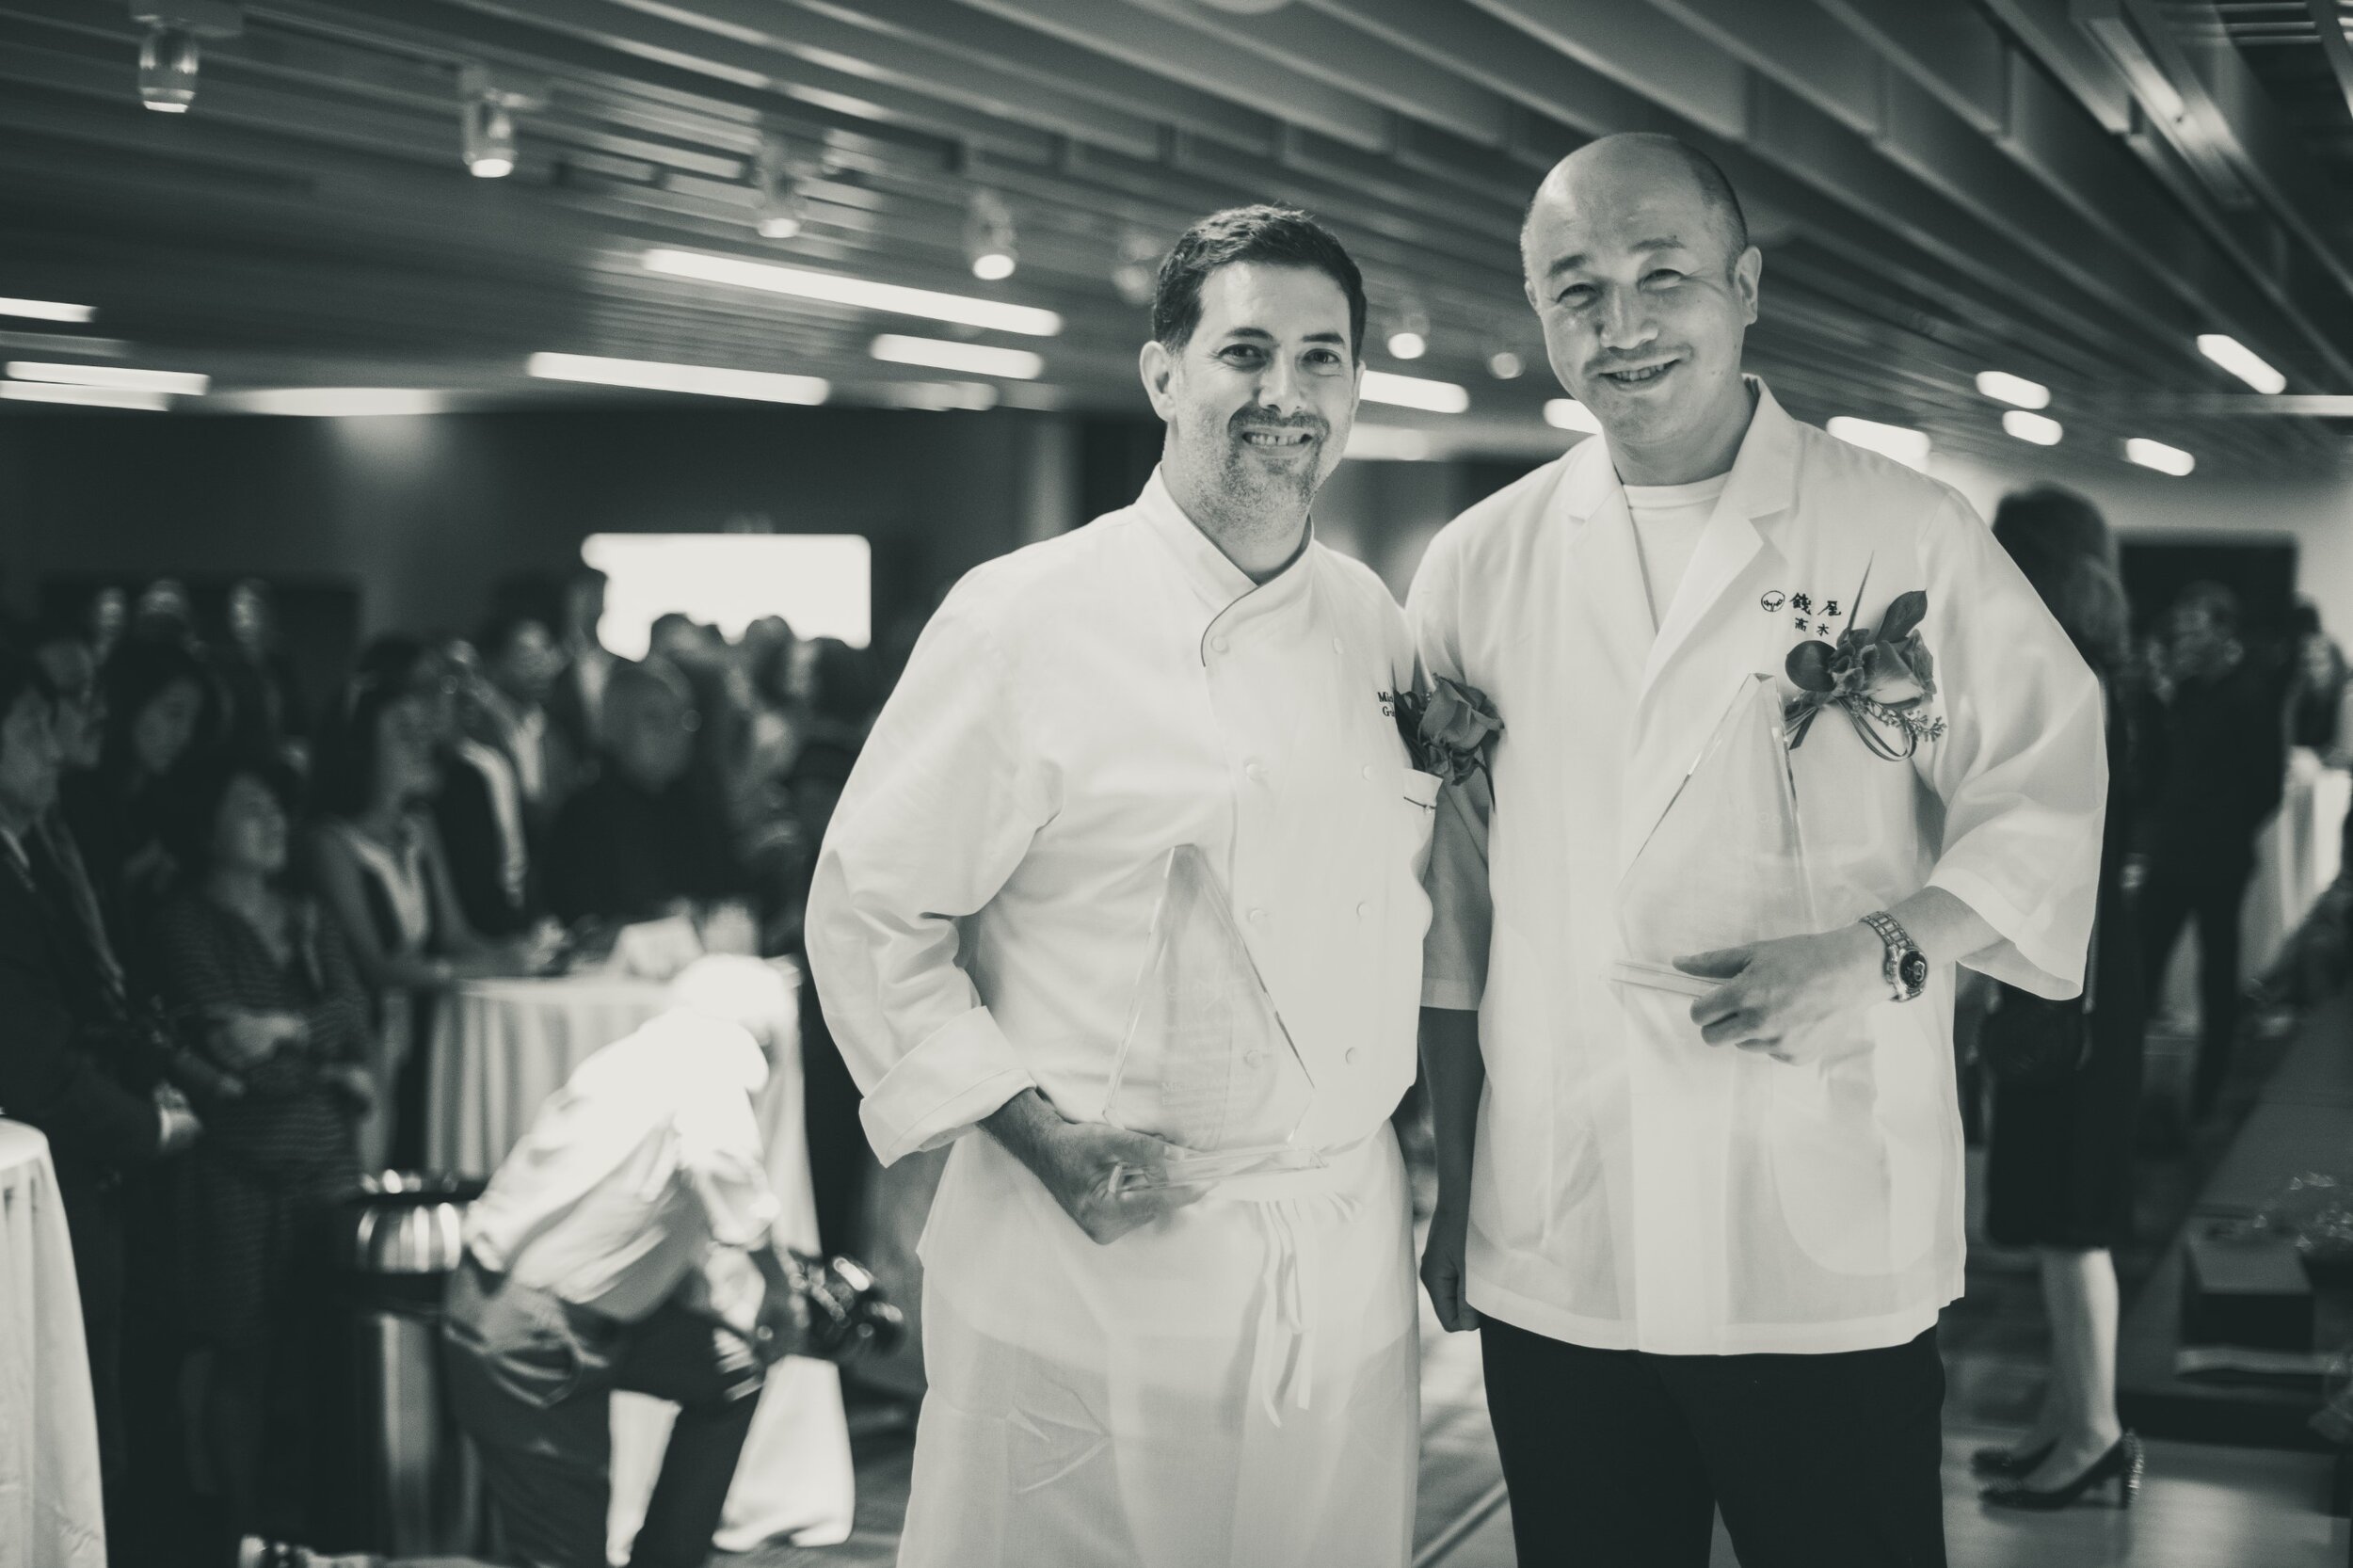  NYC Chefs Celebrate Japan Benefit Honoring Chefs Michael Anthony from Gramercy Tavern and Shin Takagi of Zeniya   